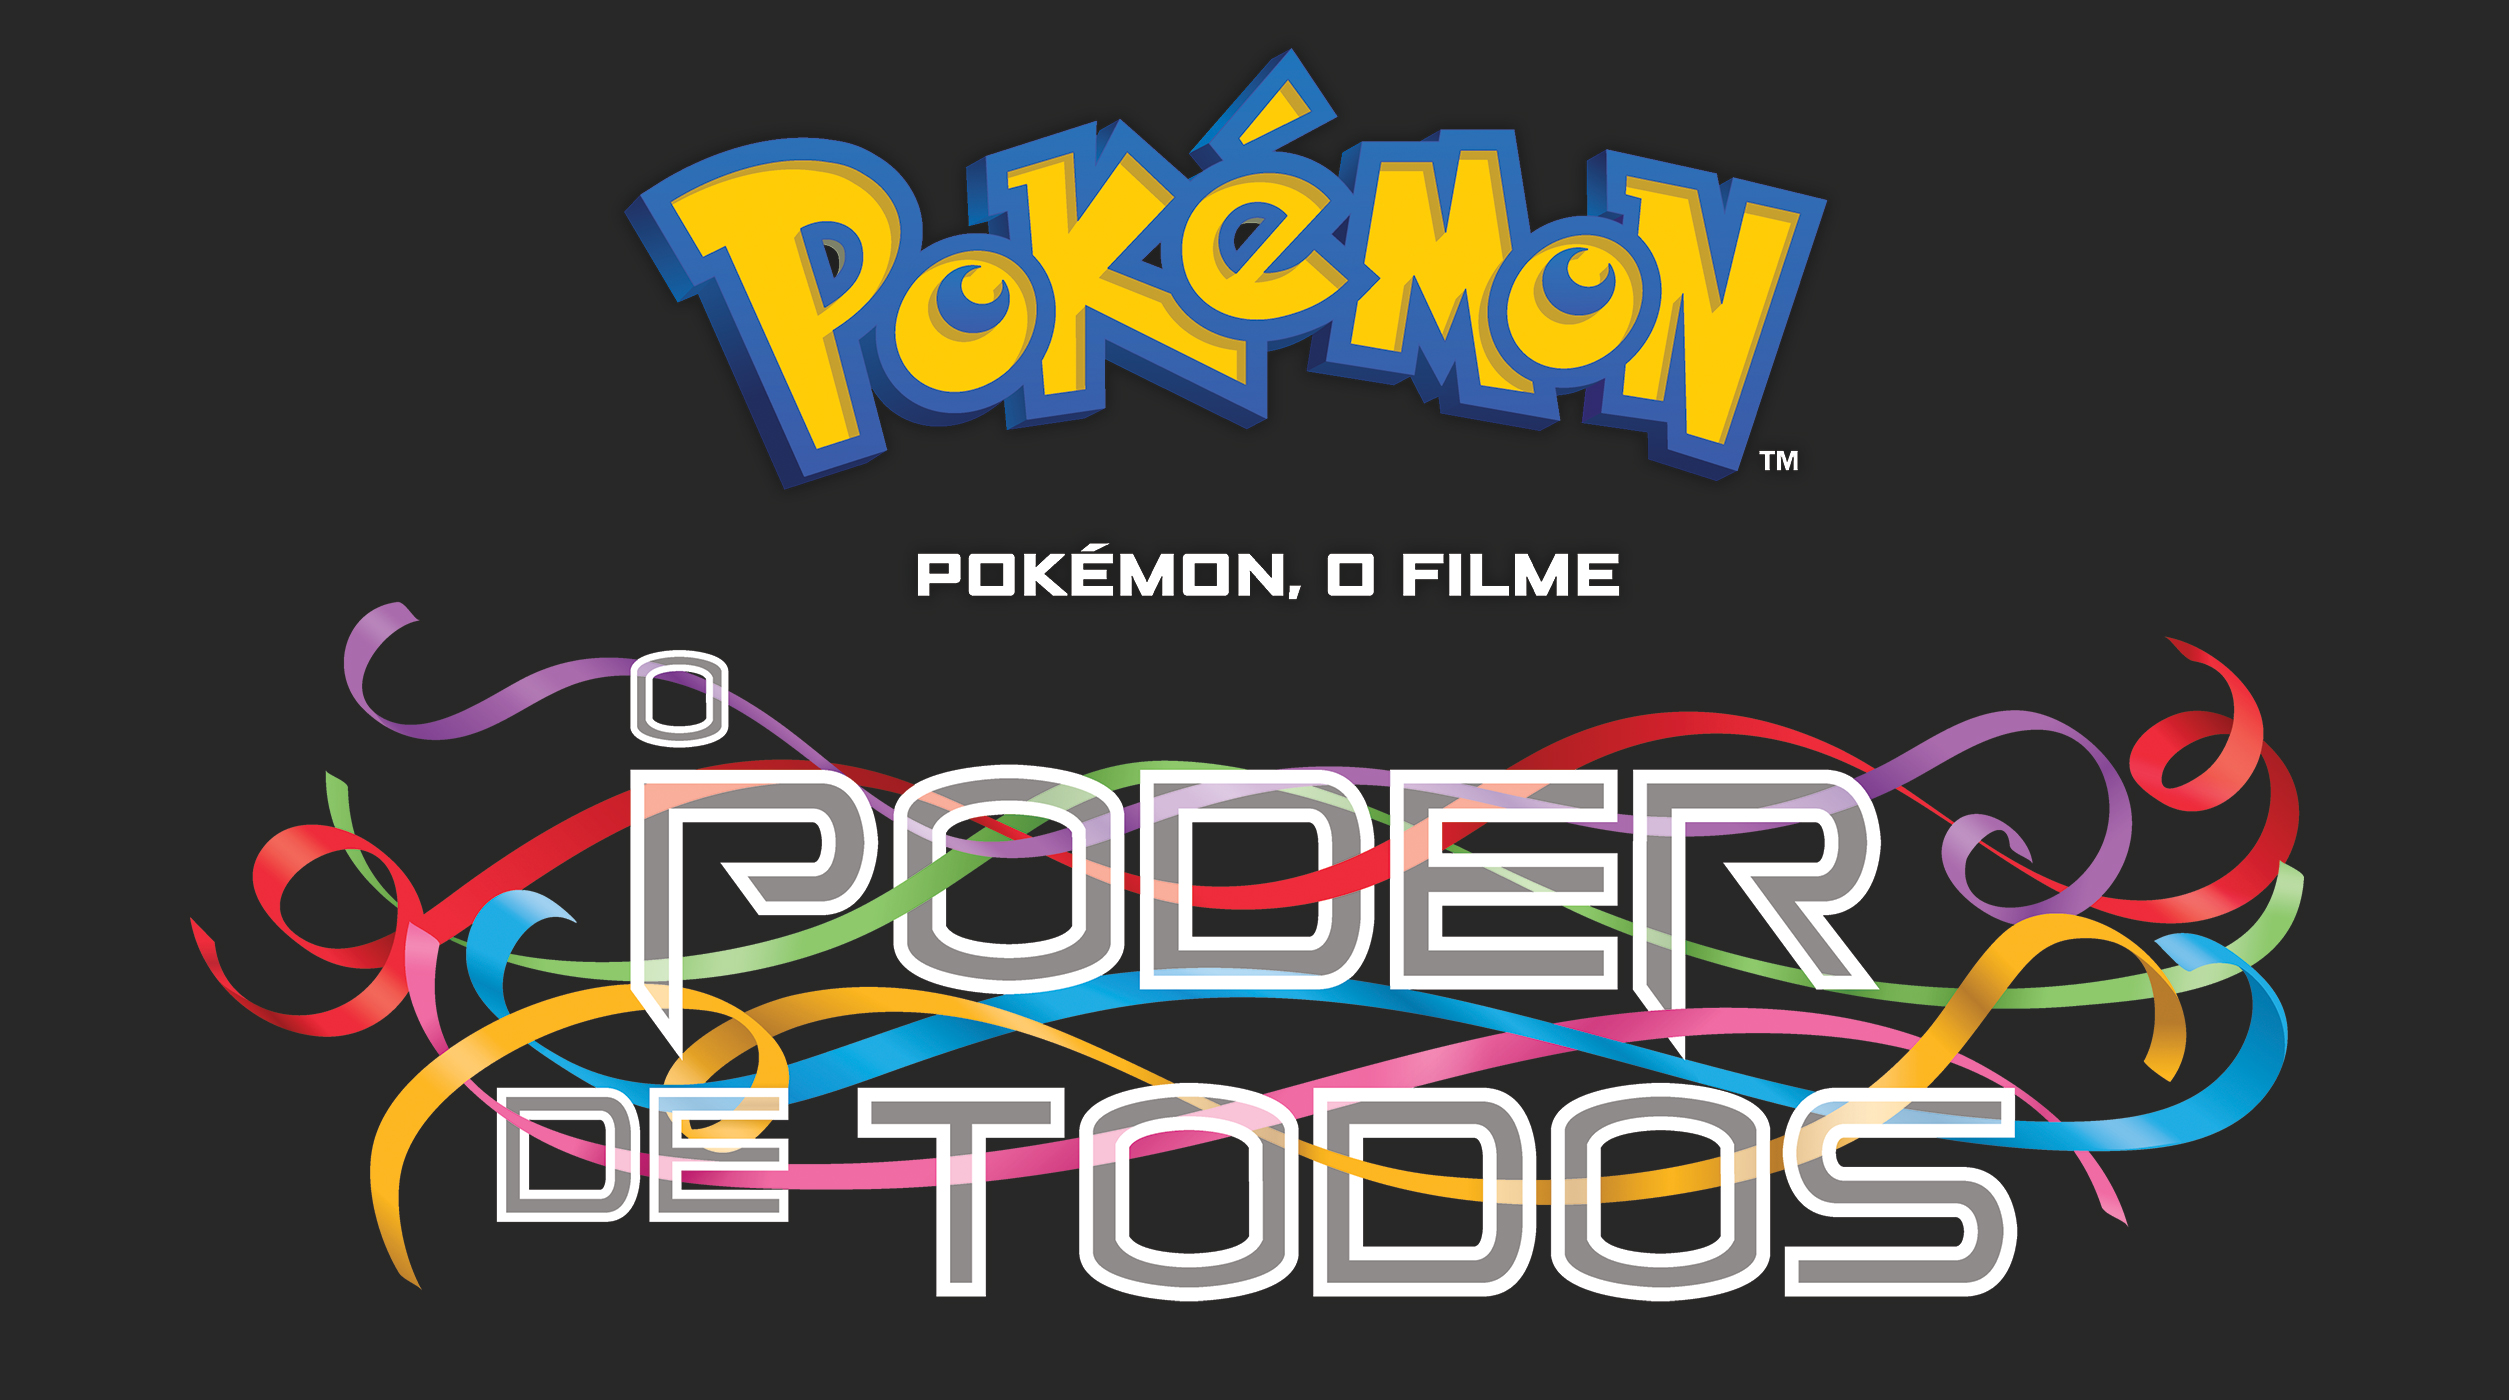 21º Filme ganha nome, dublagem e trailer ocidental (atualizado) – Pokémon  Mythology